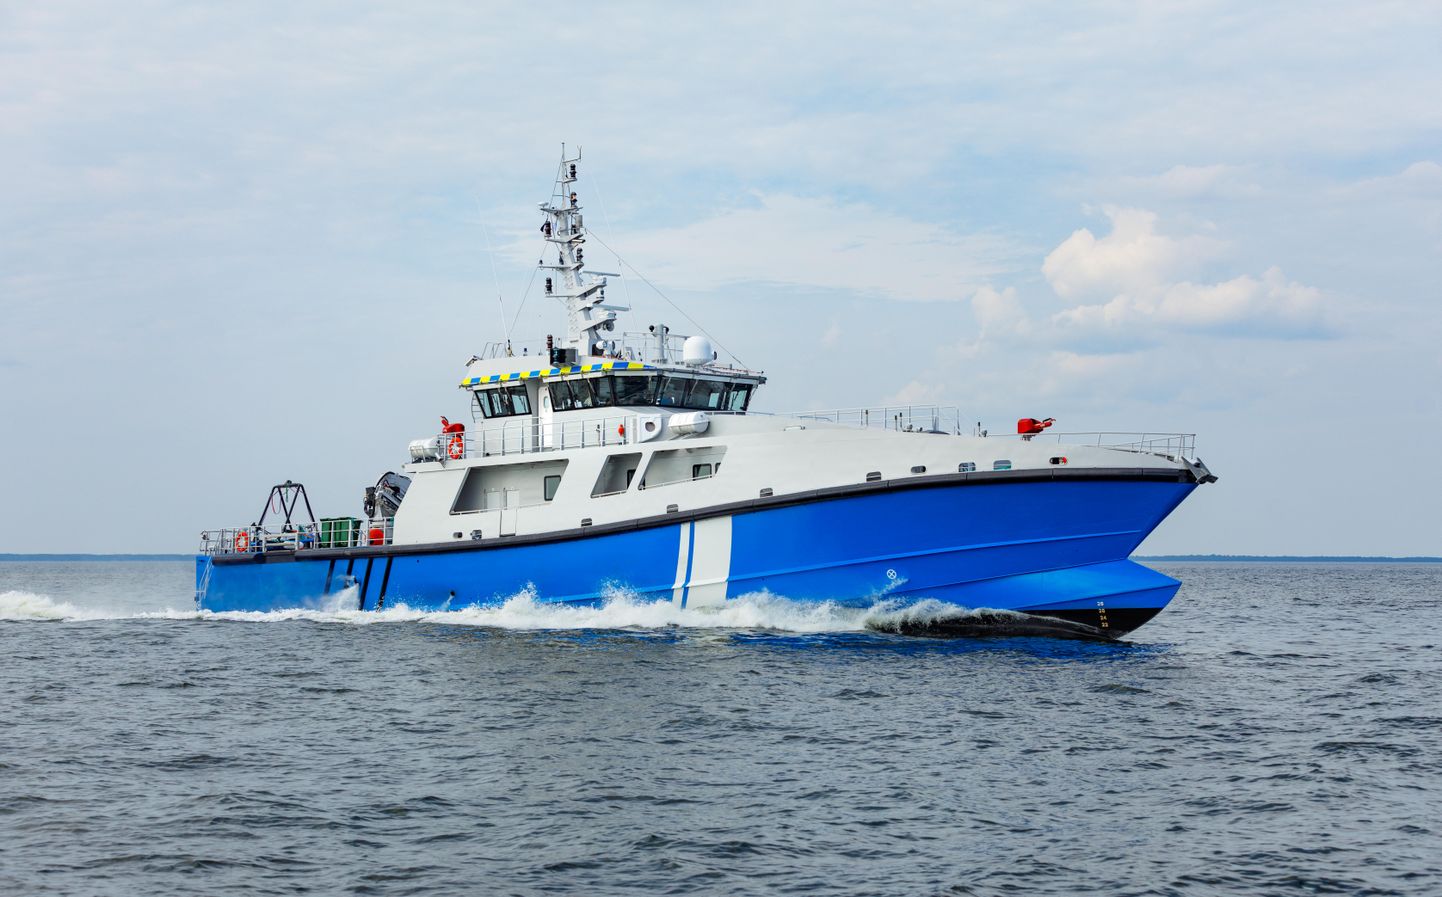 Eesti Politsei-ja Piirivalveametile ehitatud 45 meetrine reostustõrjevõimekusega patrull-laev “Raju"